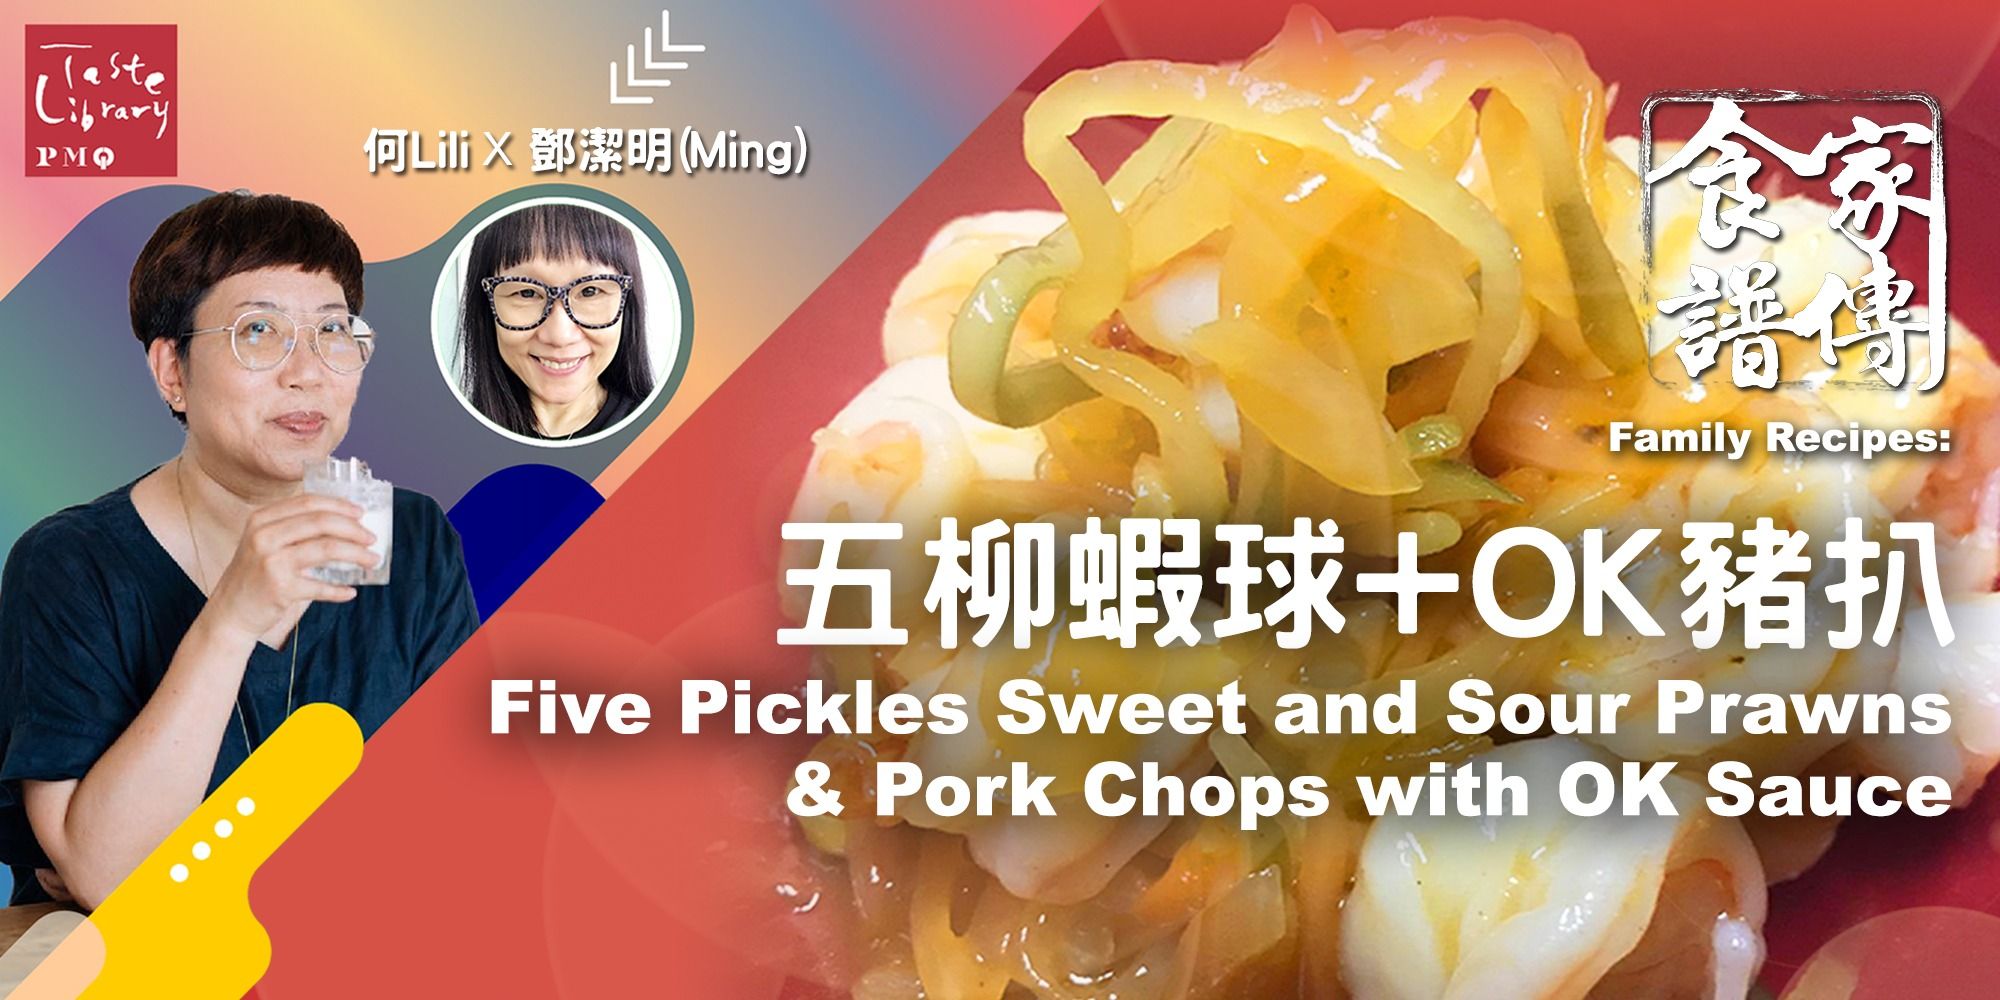 家傳食譜 : 五柳蝦球 + OK豬扒 Family Recipes Workshop : Five Pickles Sweet and Sour Prawns &amp; Pork Chops with OK Sauce (嘉賓: 鄧潔明)